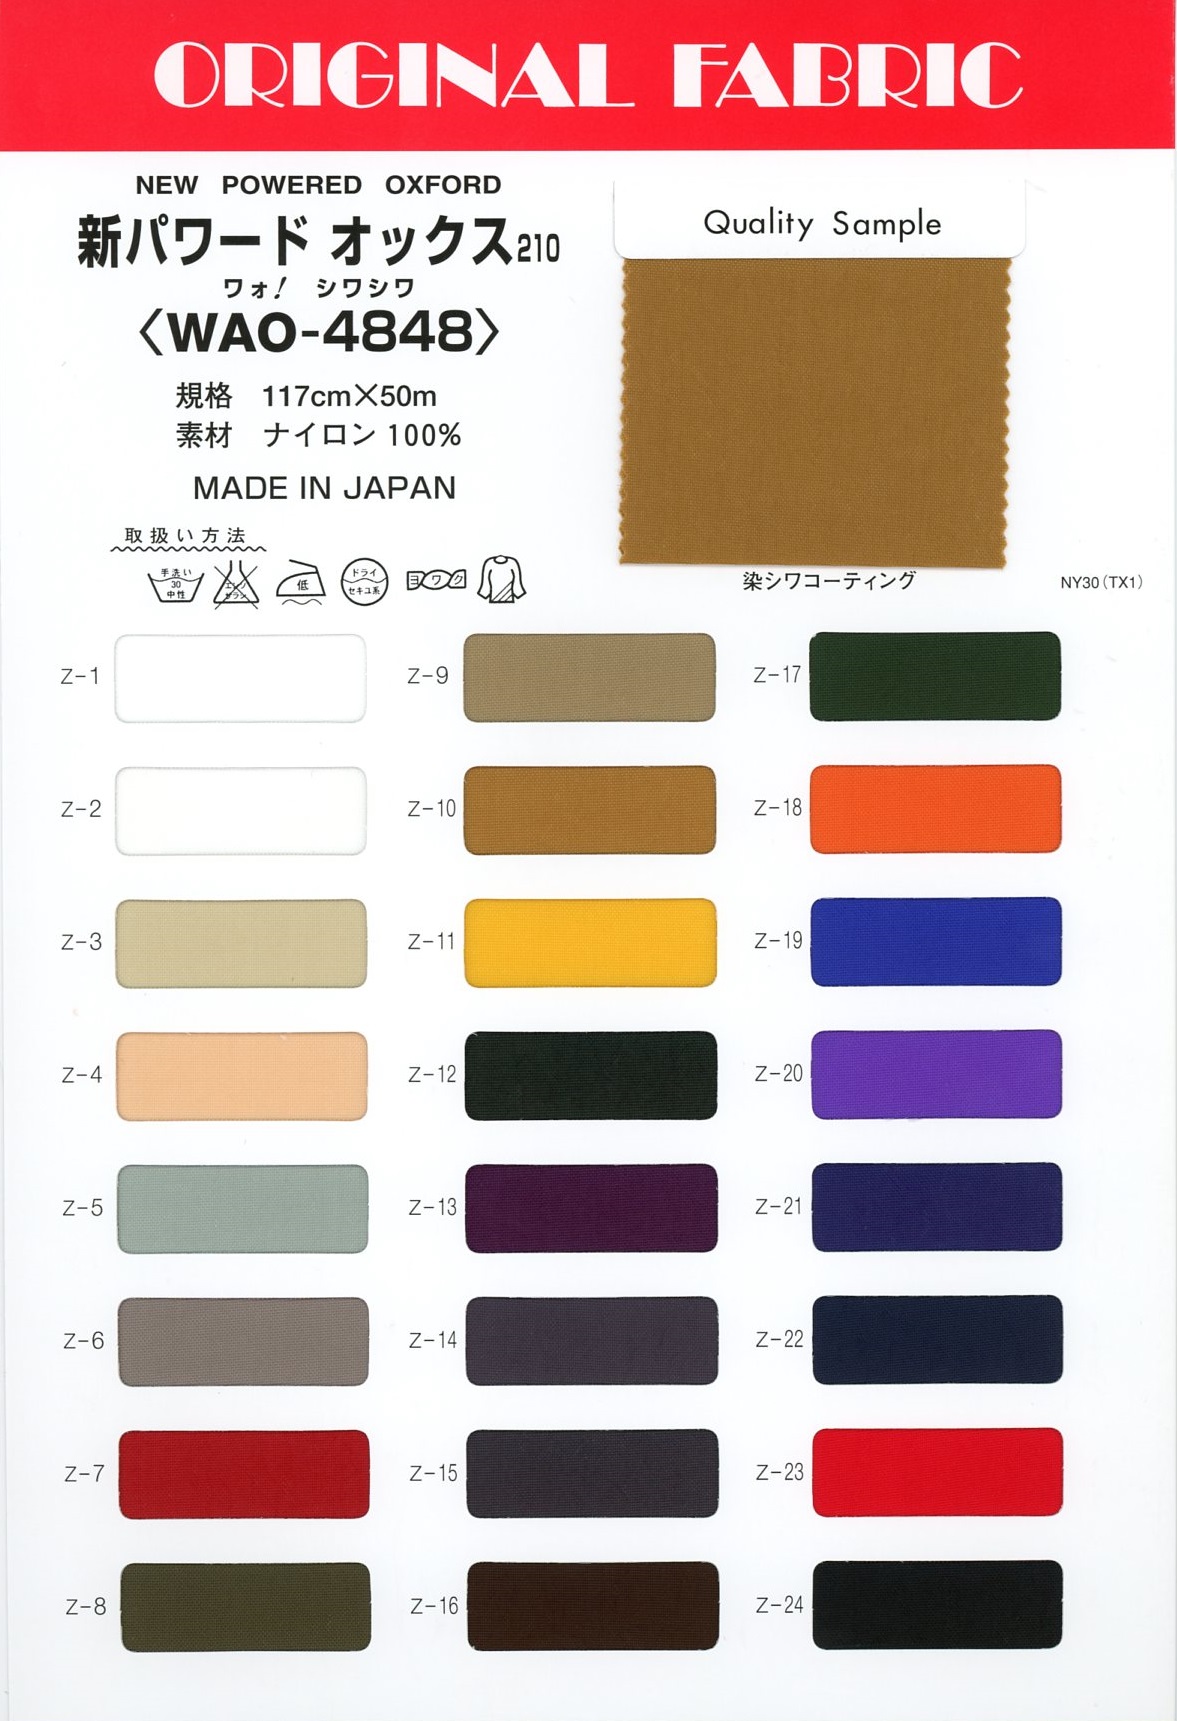 WAO-4848 新パワードオックス 210[生地] Masuda(マスダ)